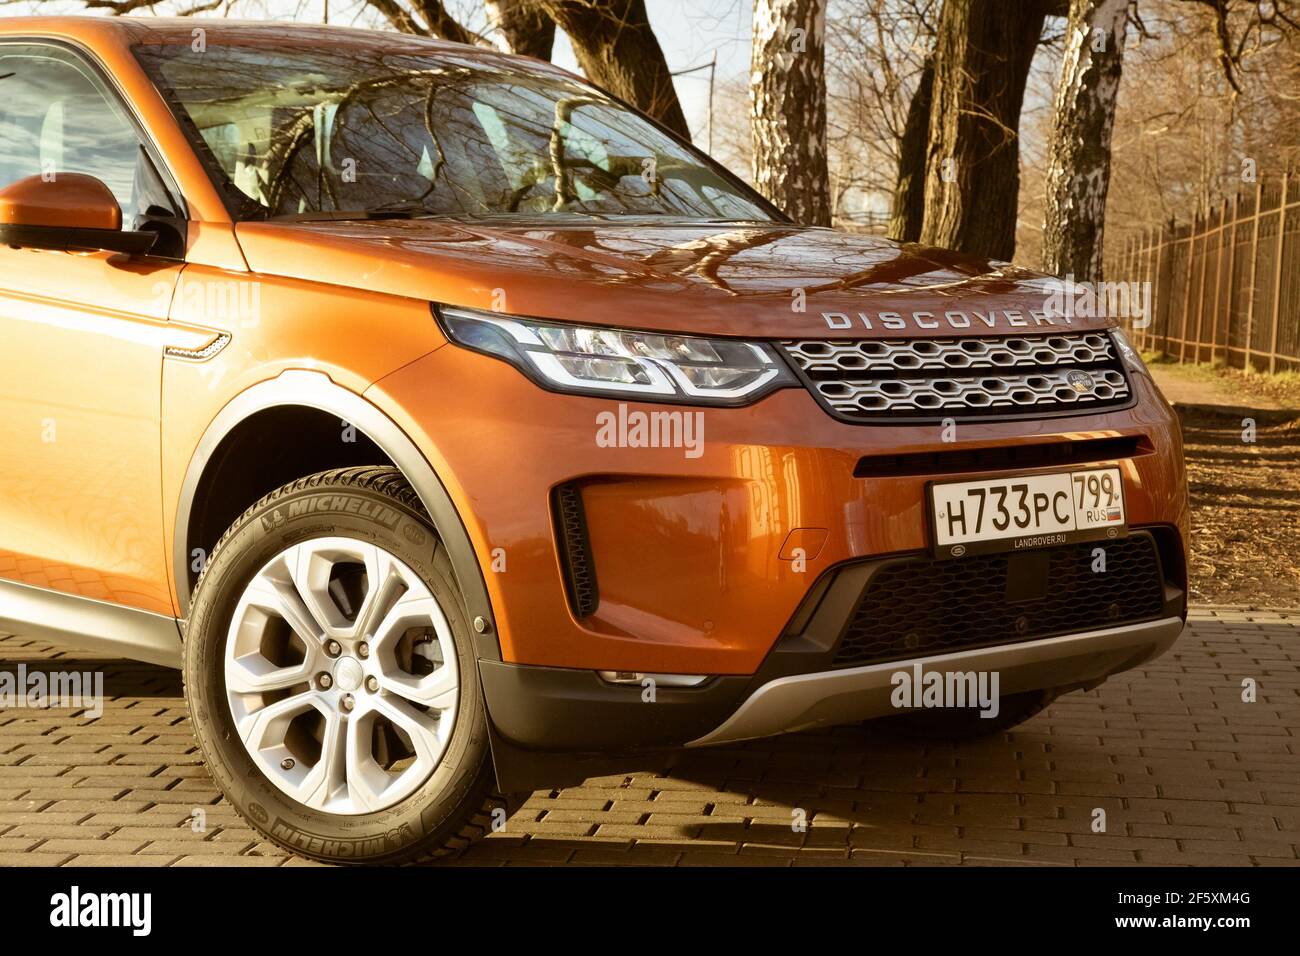 Moskau, Russland - 20. Dezember 2019: Der neue Land Rover Discovery Sport 2019 steht auf dem Park. Nahaufnahme der Vorderansicht der Seite. Scheinwerfer, Stoßfänger und Haube von orange suv, silberne Räder, .. Stockfoto